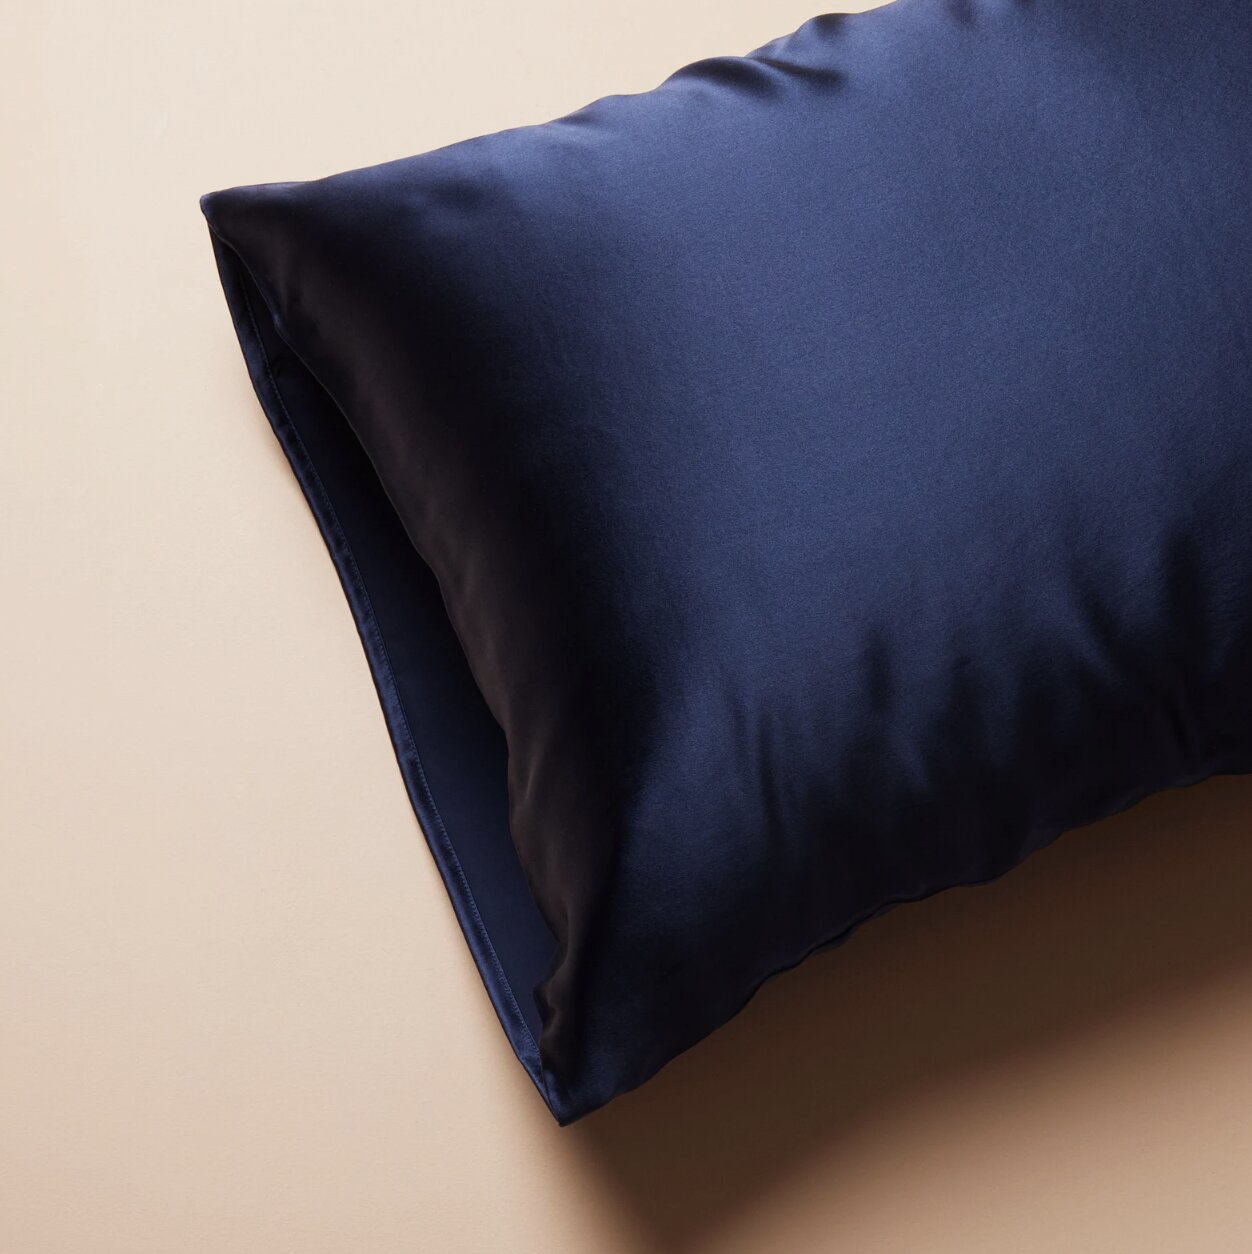 Style 3 Funda de almohada francesa: funda de almohada pequeña de